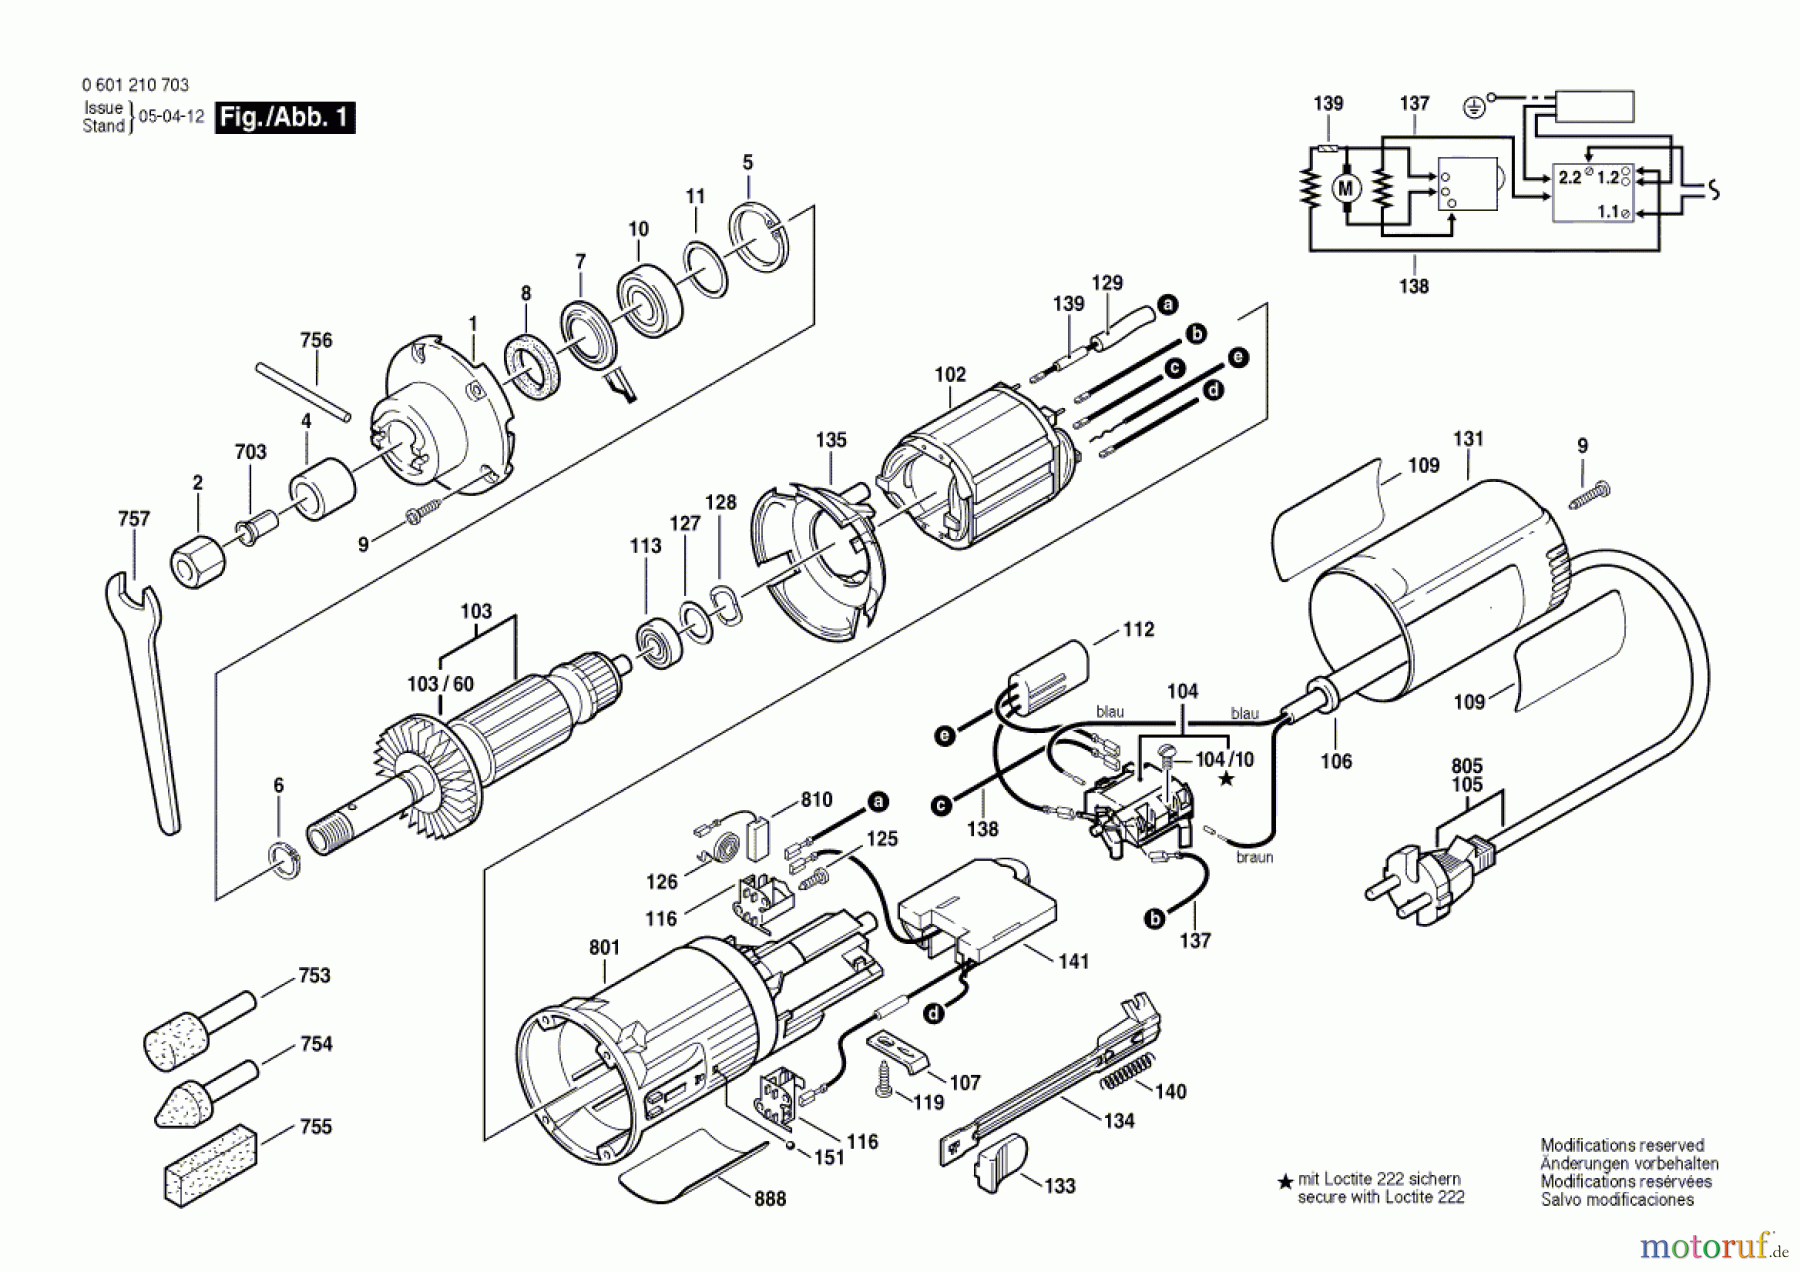  Bosch Werkzeug Geradschleifer GGS 27 C Seite 1